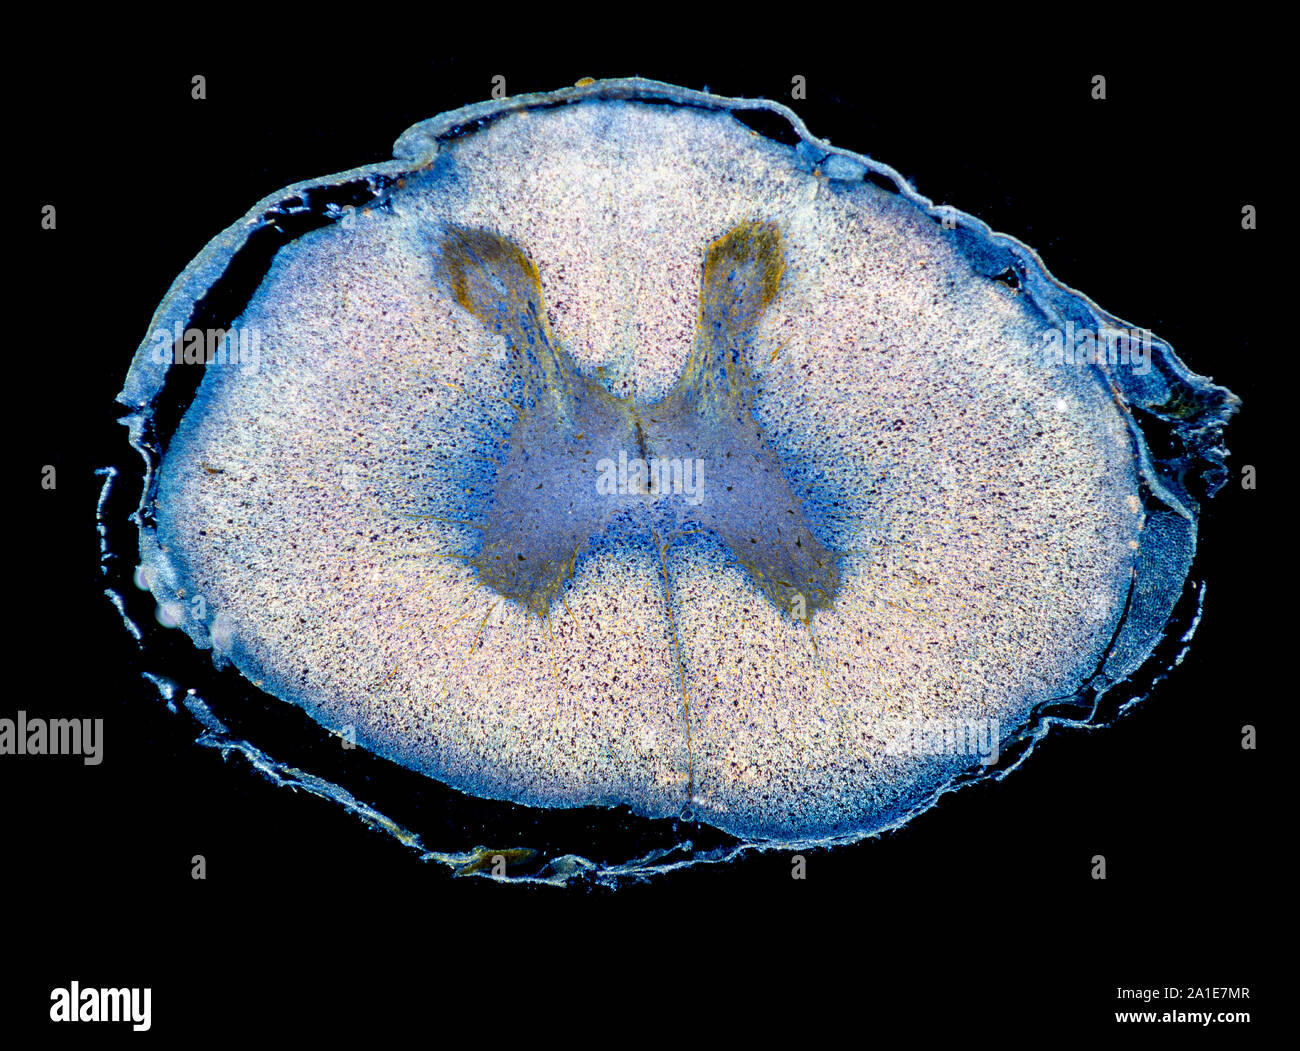 La moelle épinière du fœtus humain, TS, section vitrail darkfield photomicrographie Banque D'Images